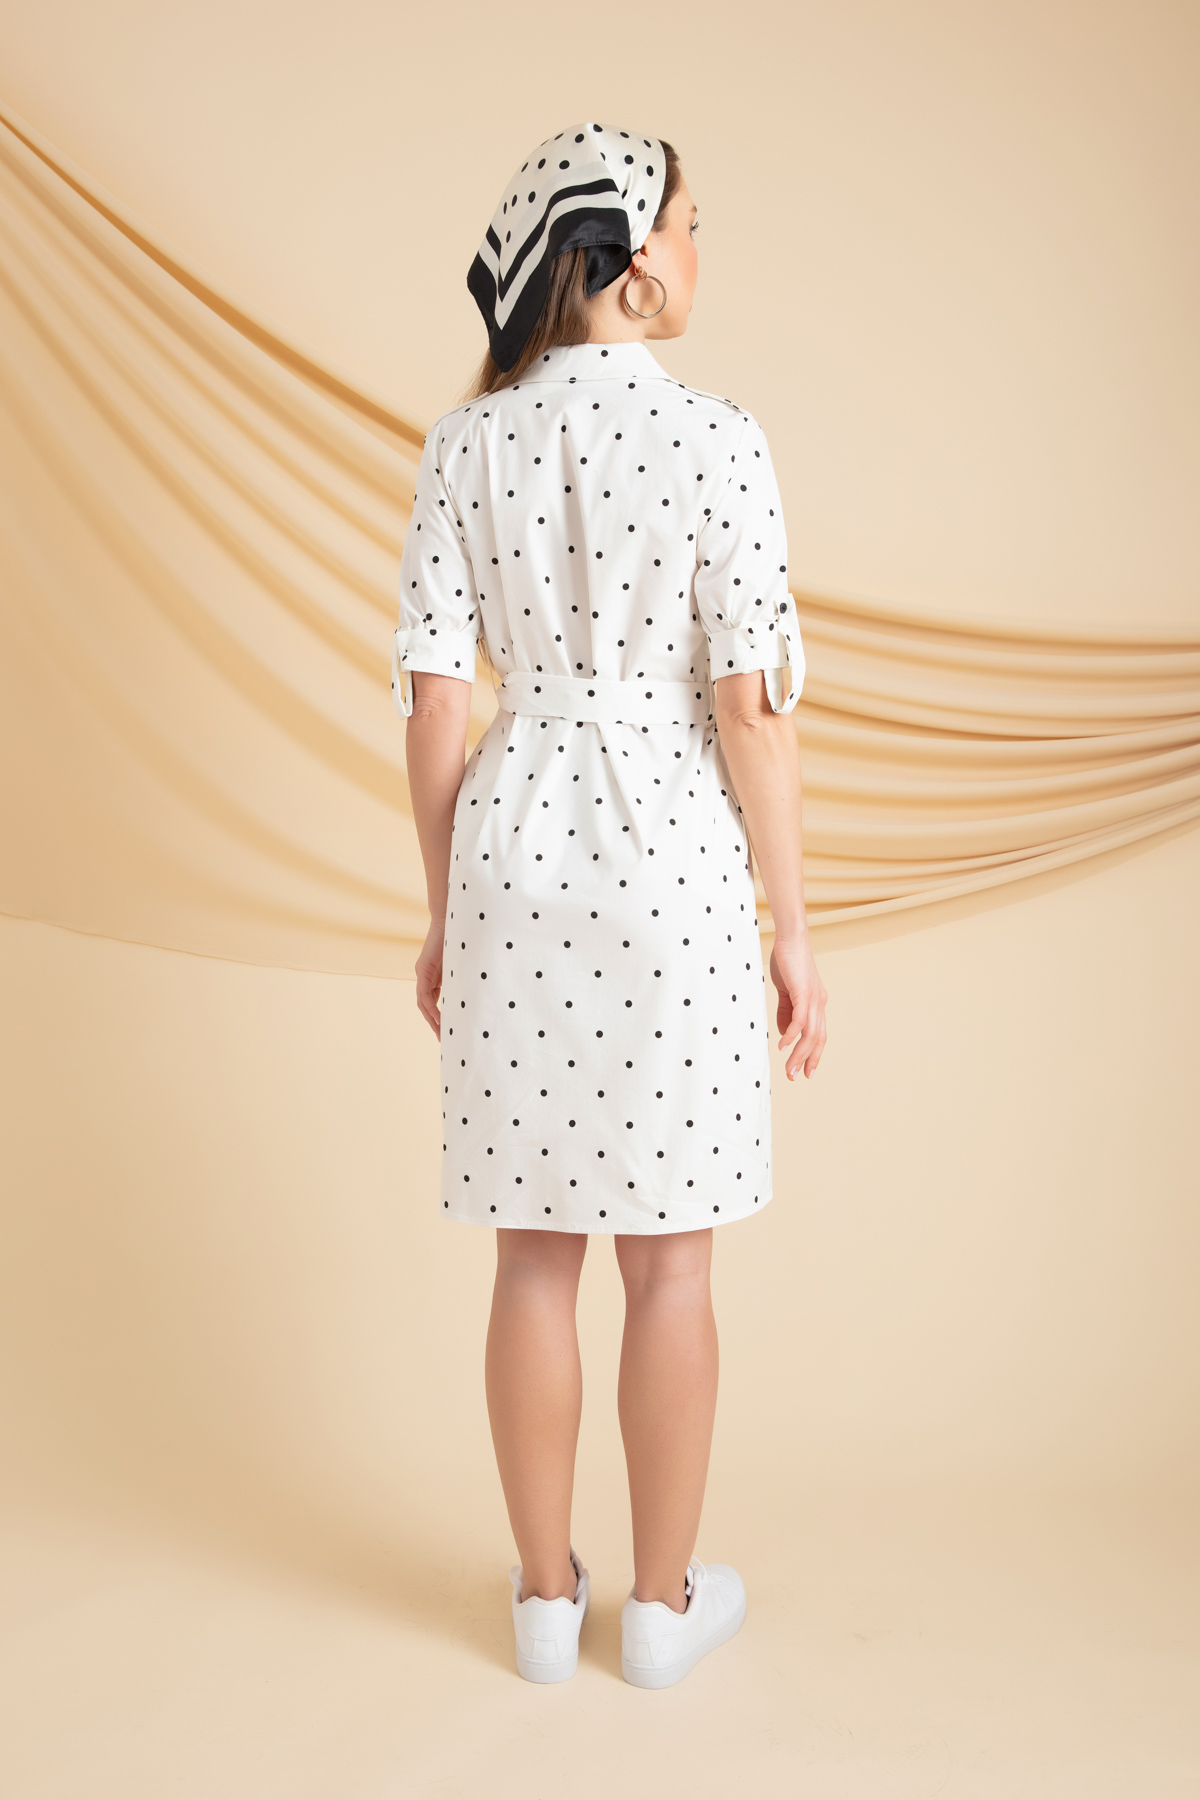 Women's White Polka Dot Patterned Dress